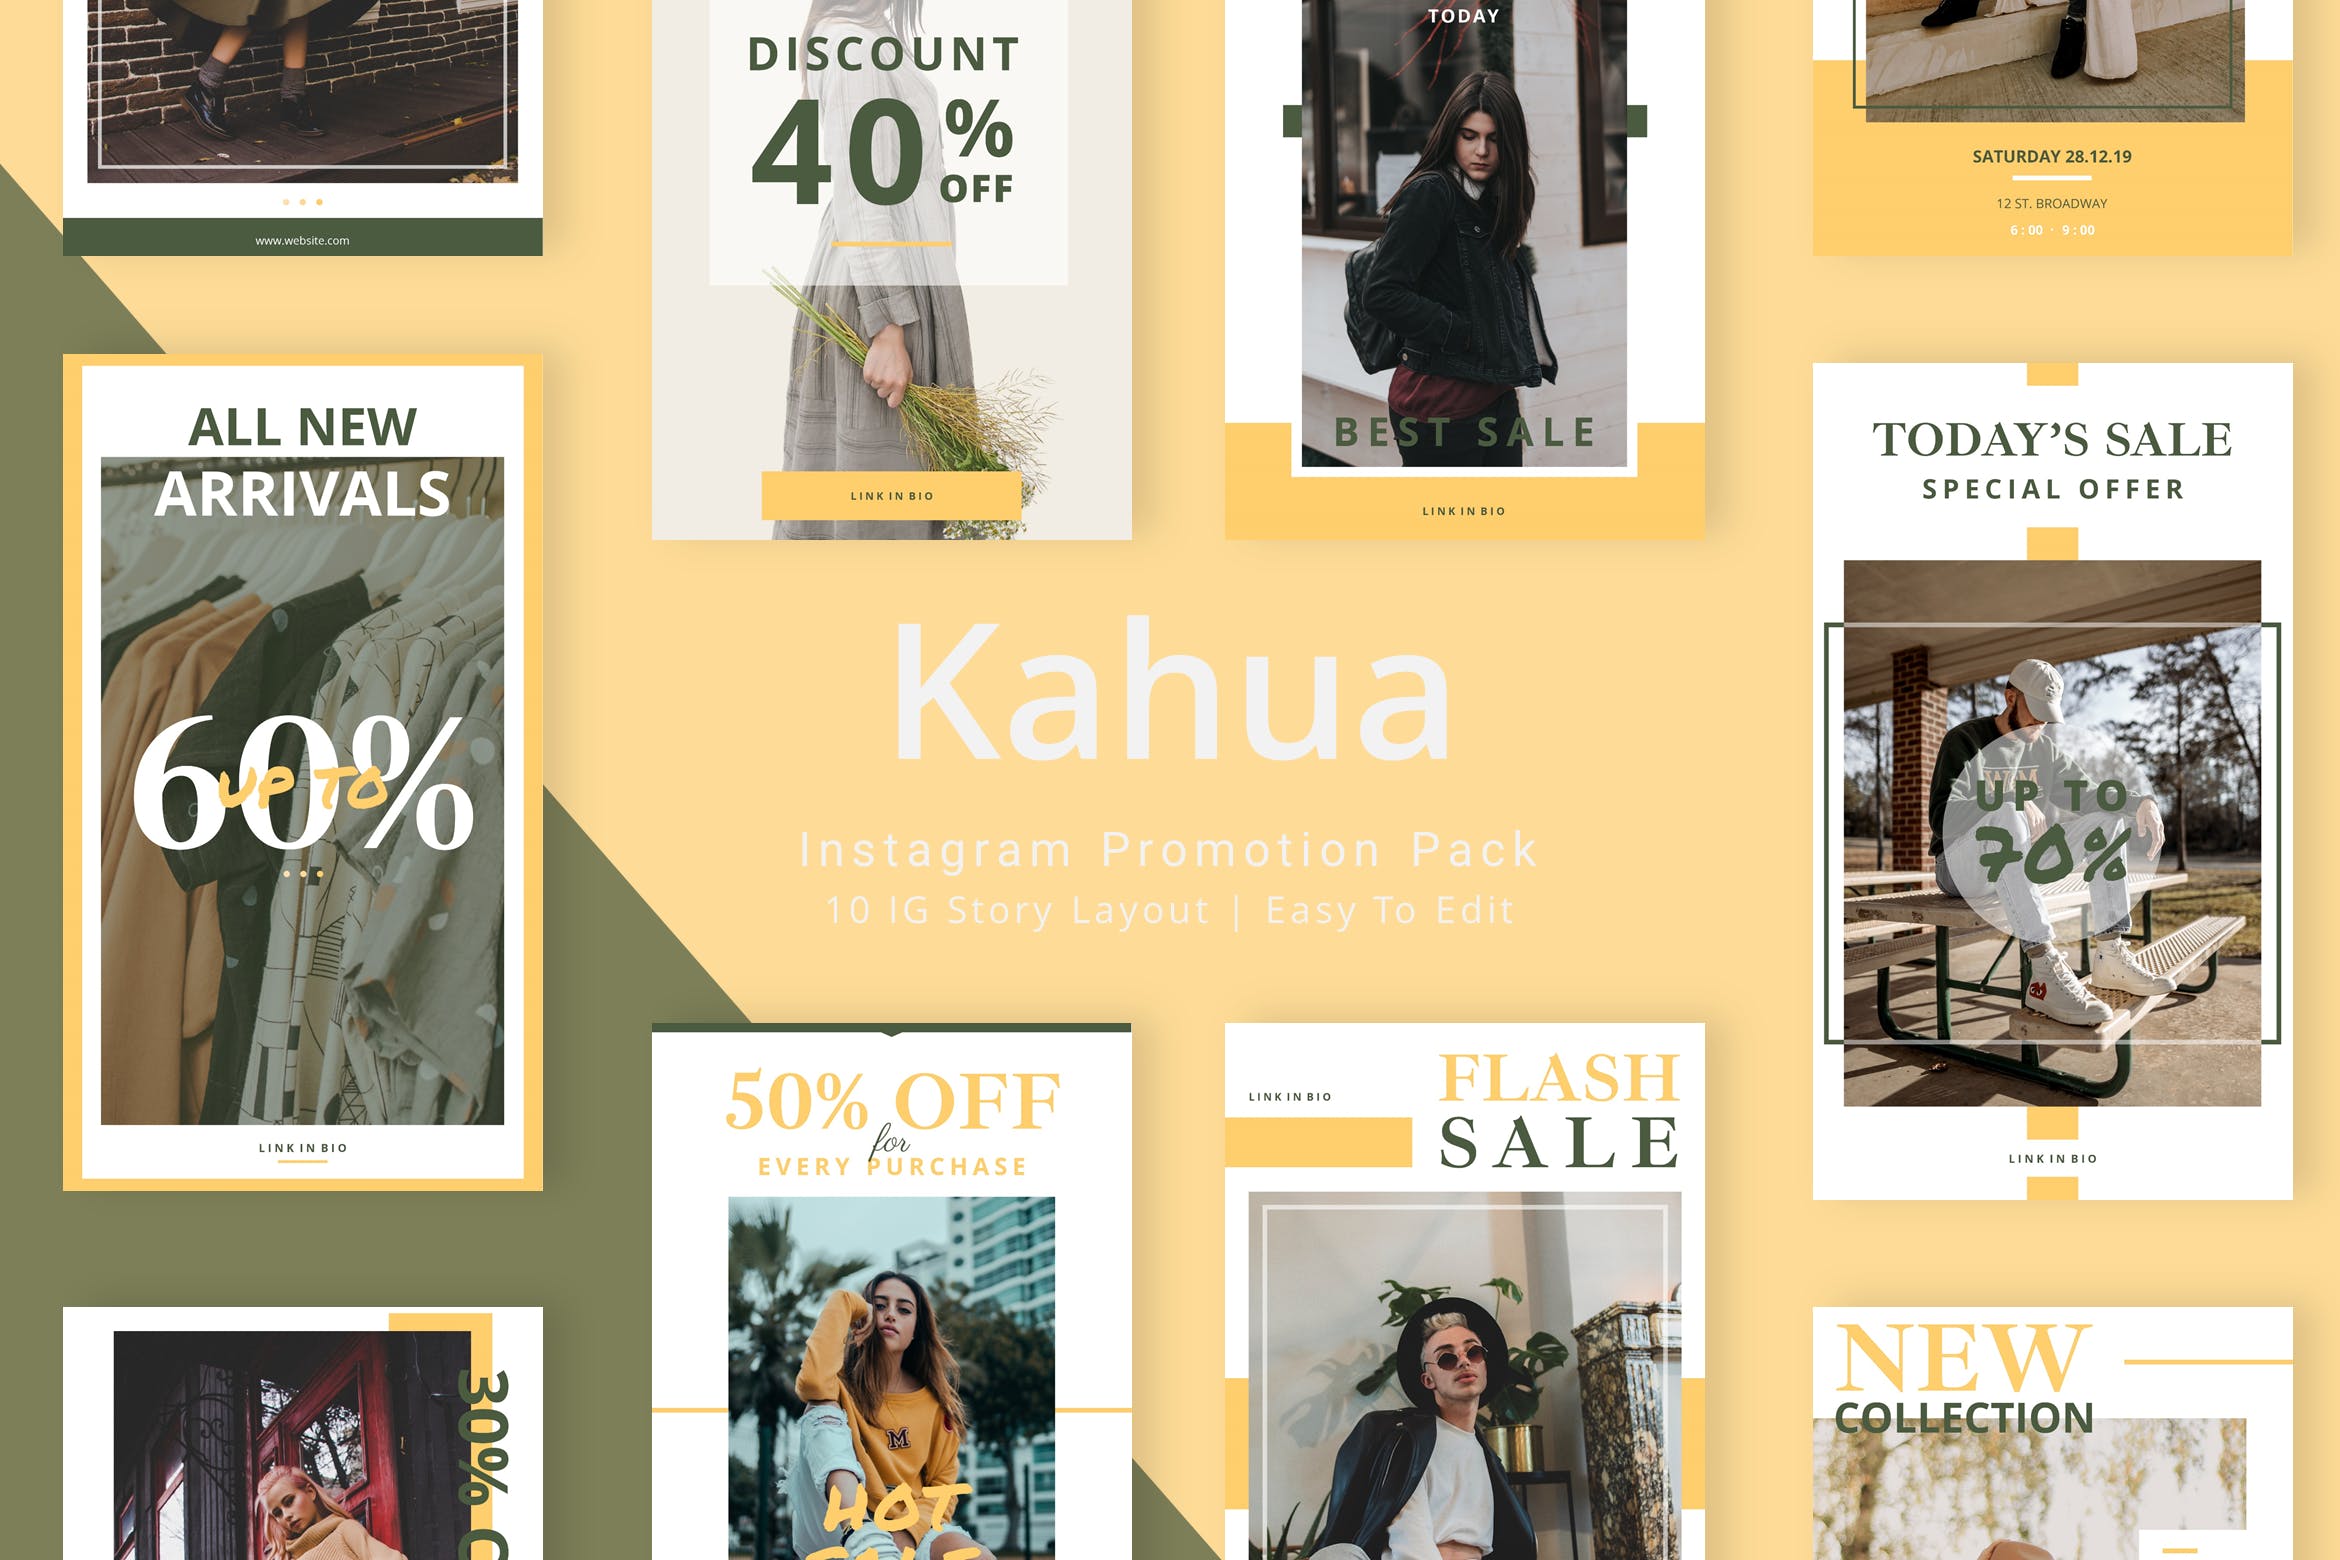 小众时尚服饰品牌新品发布/促销活动Instagram社交广告模板第一素材精选 Kahua – Instagram Story Pack插图